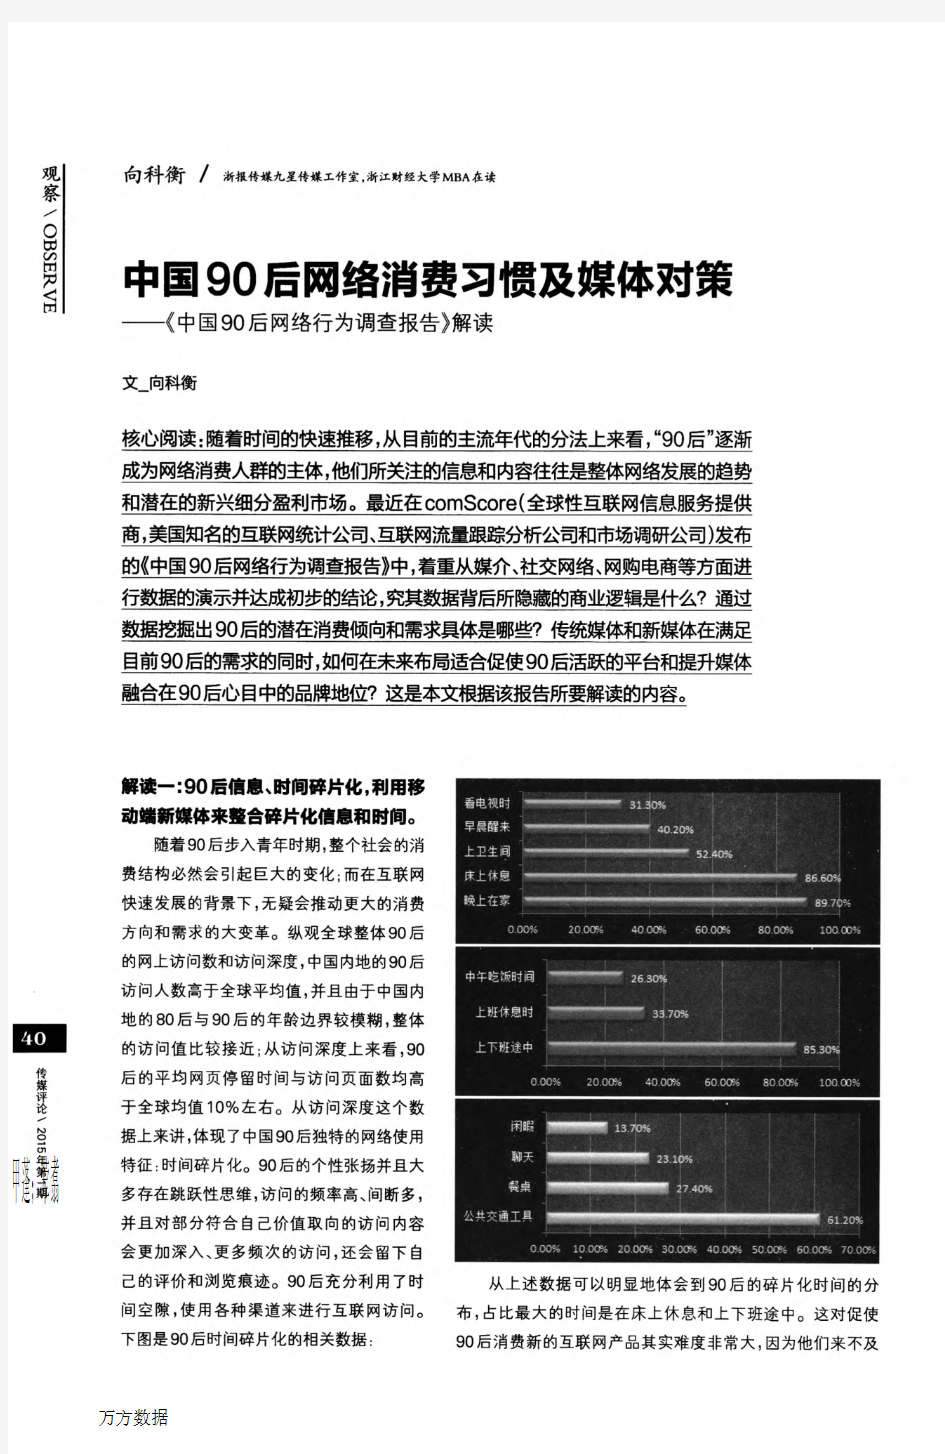 中国90后网络消费习惯及媒体对策——《中国90后网络行为调查报告》解读